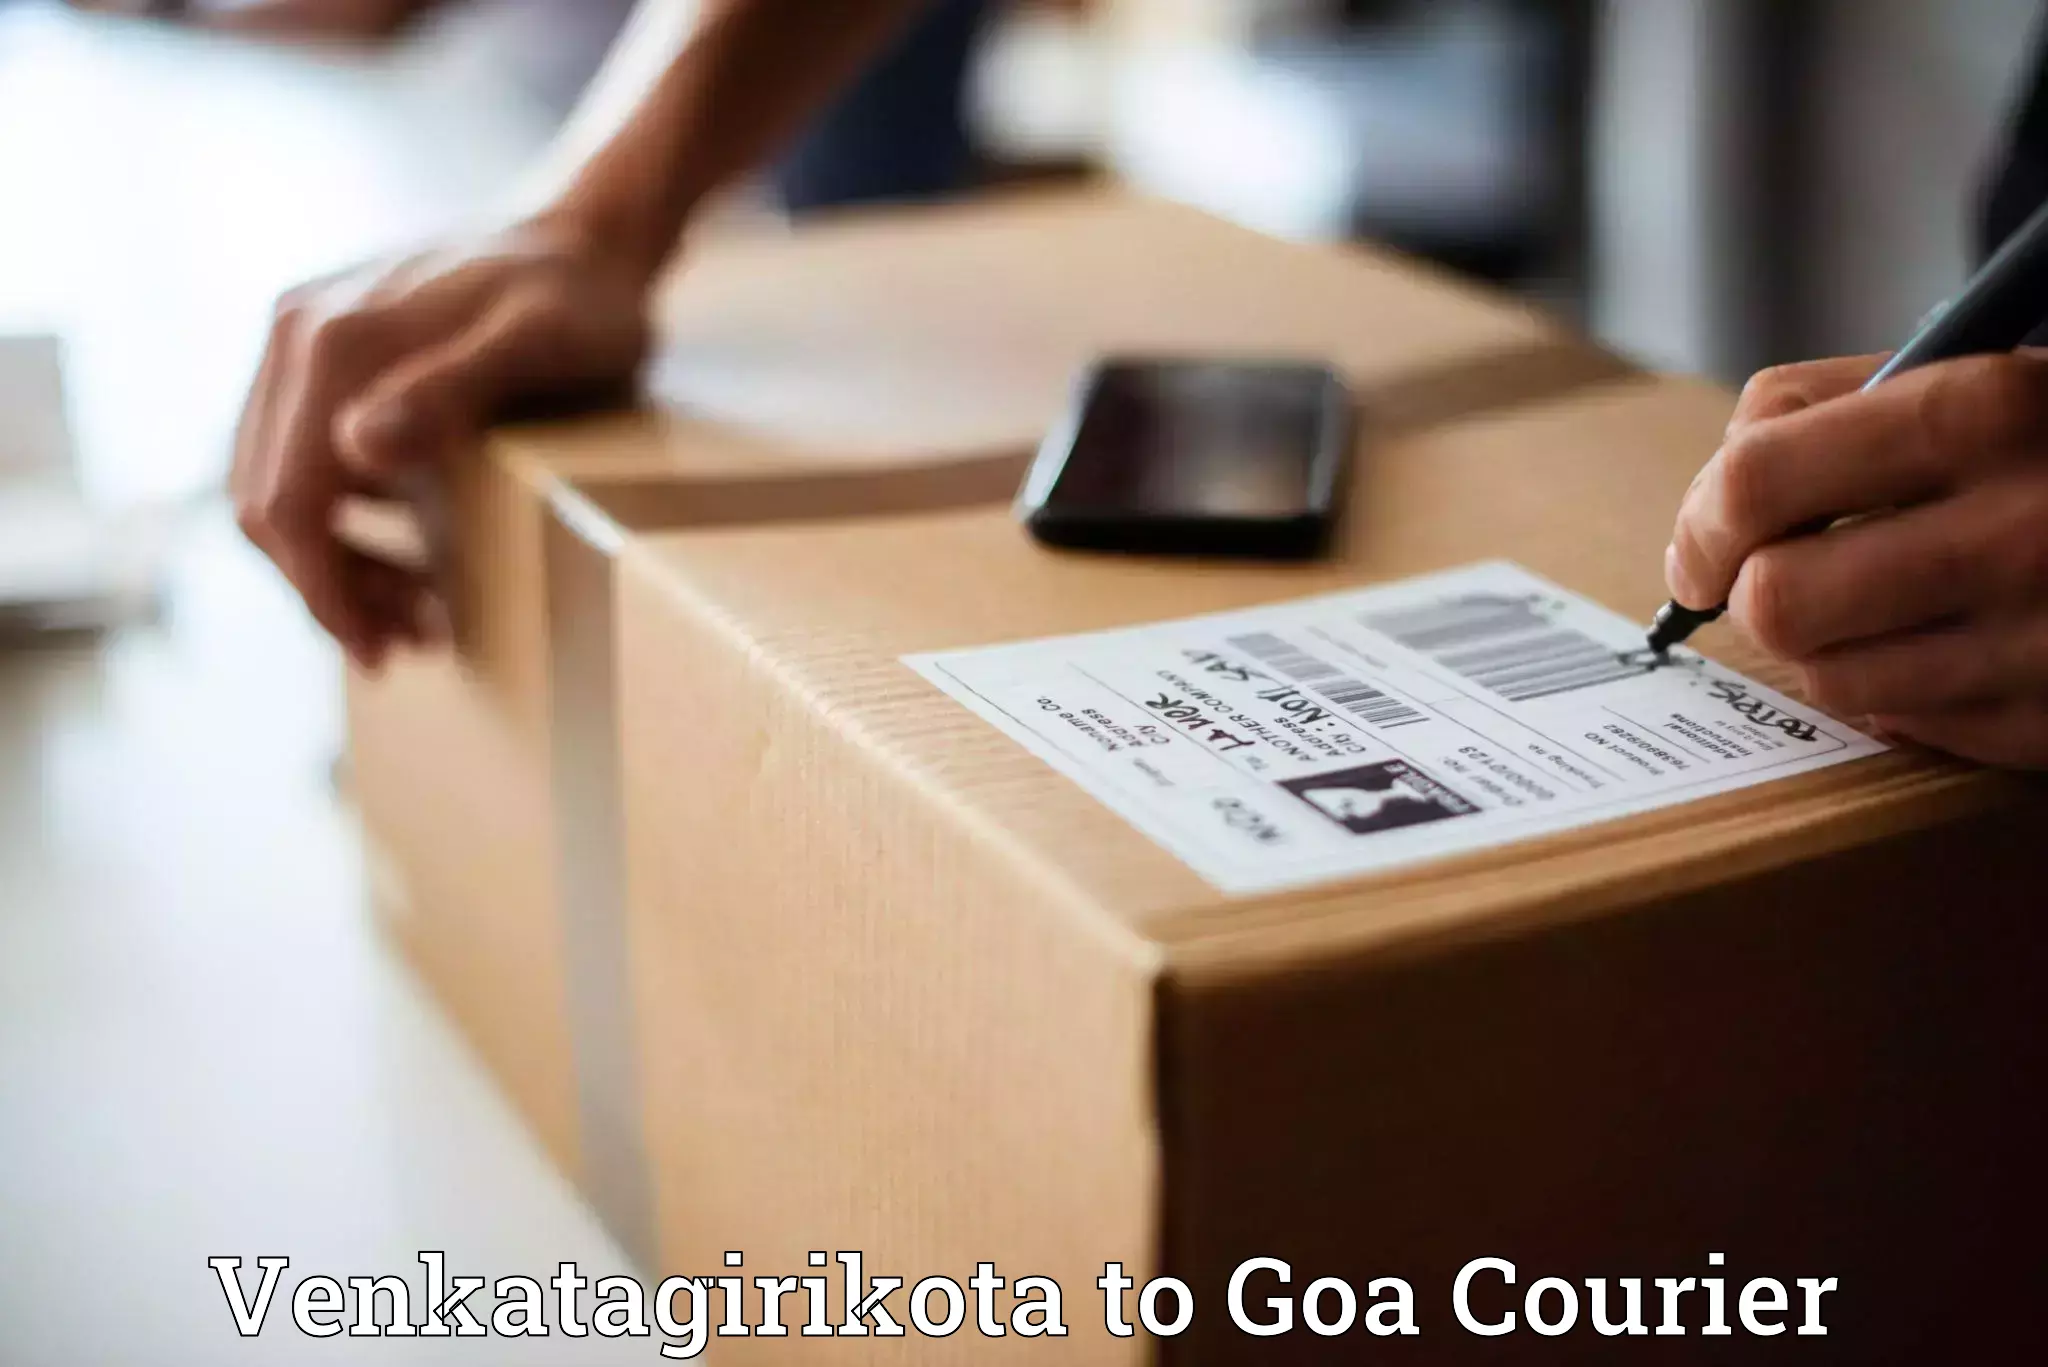 Seamless shipping service Venkatagirikota to NIT Goa